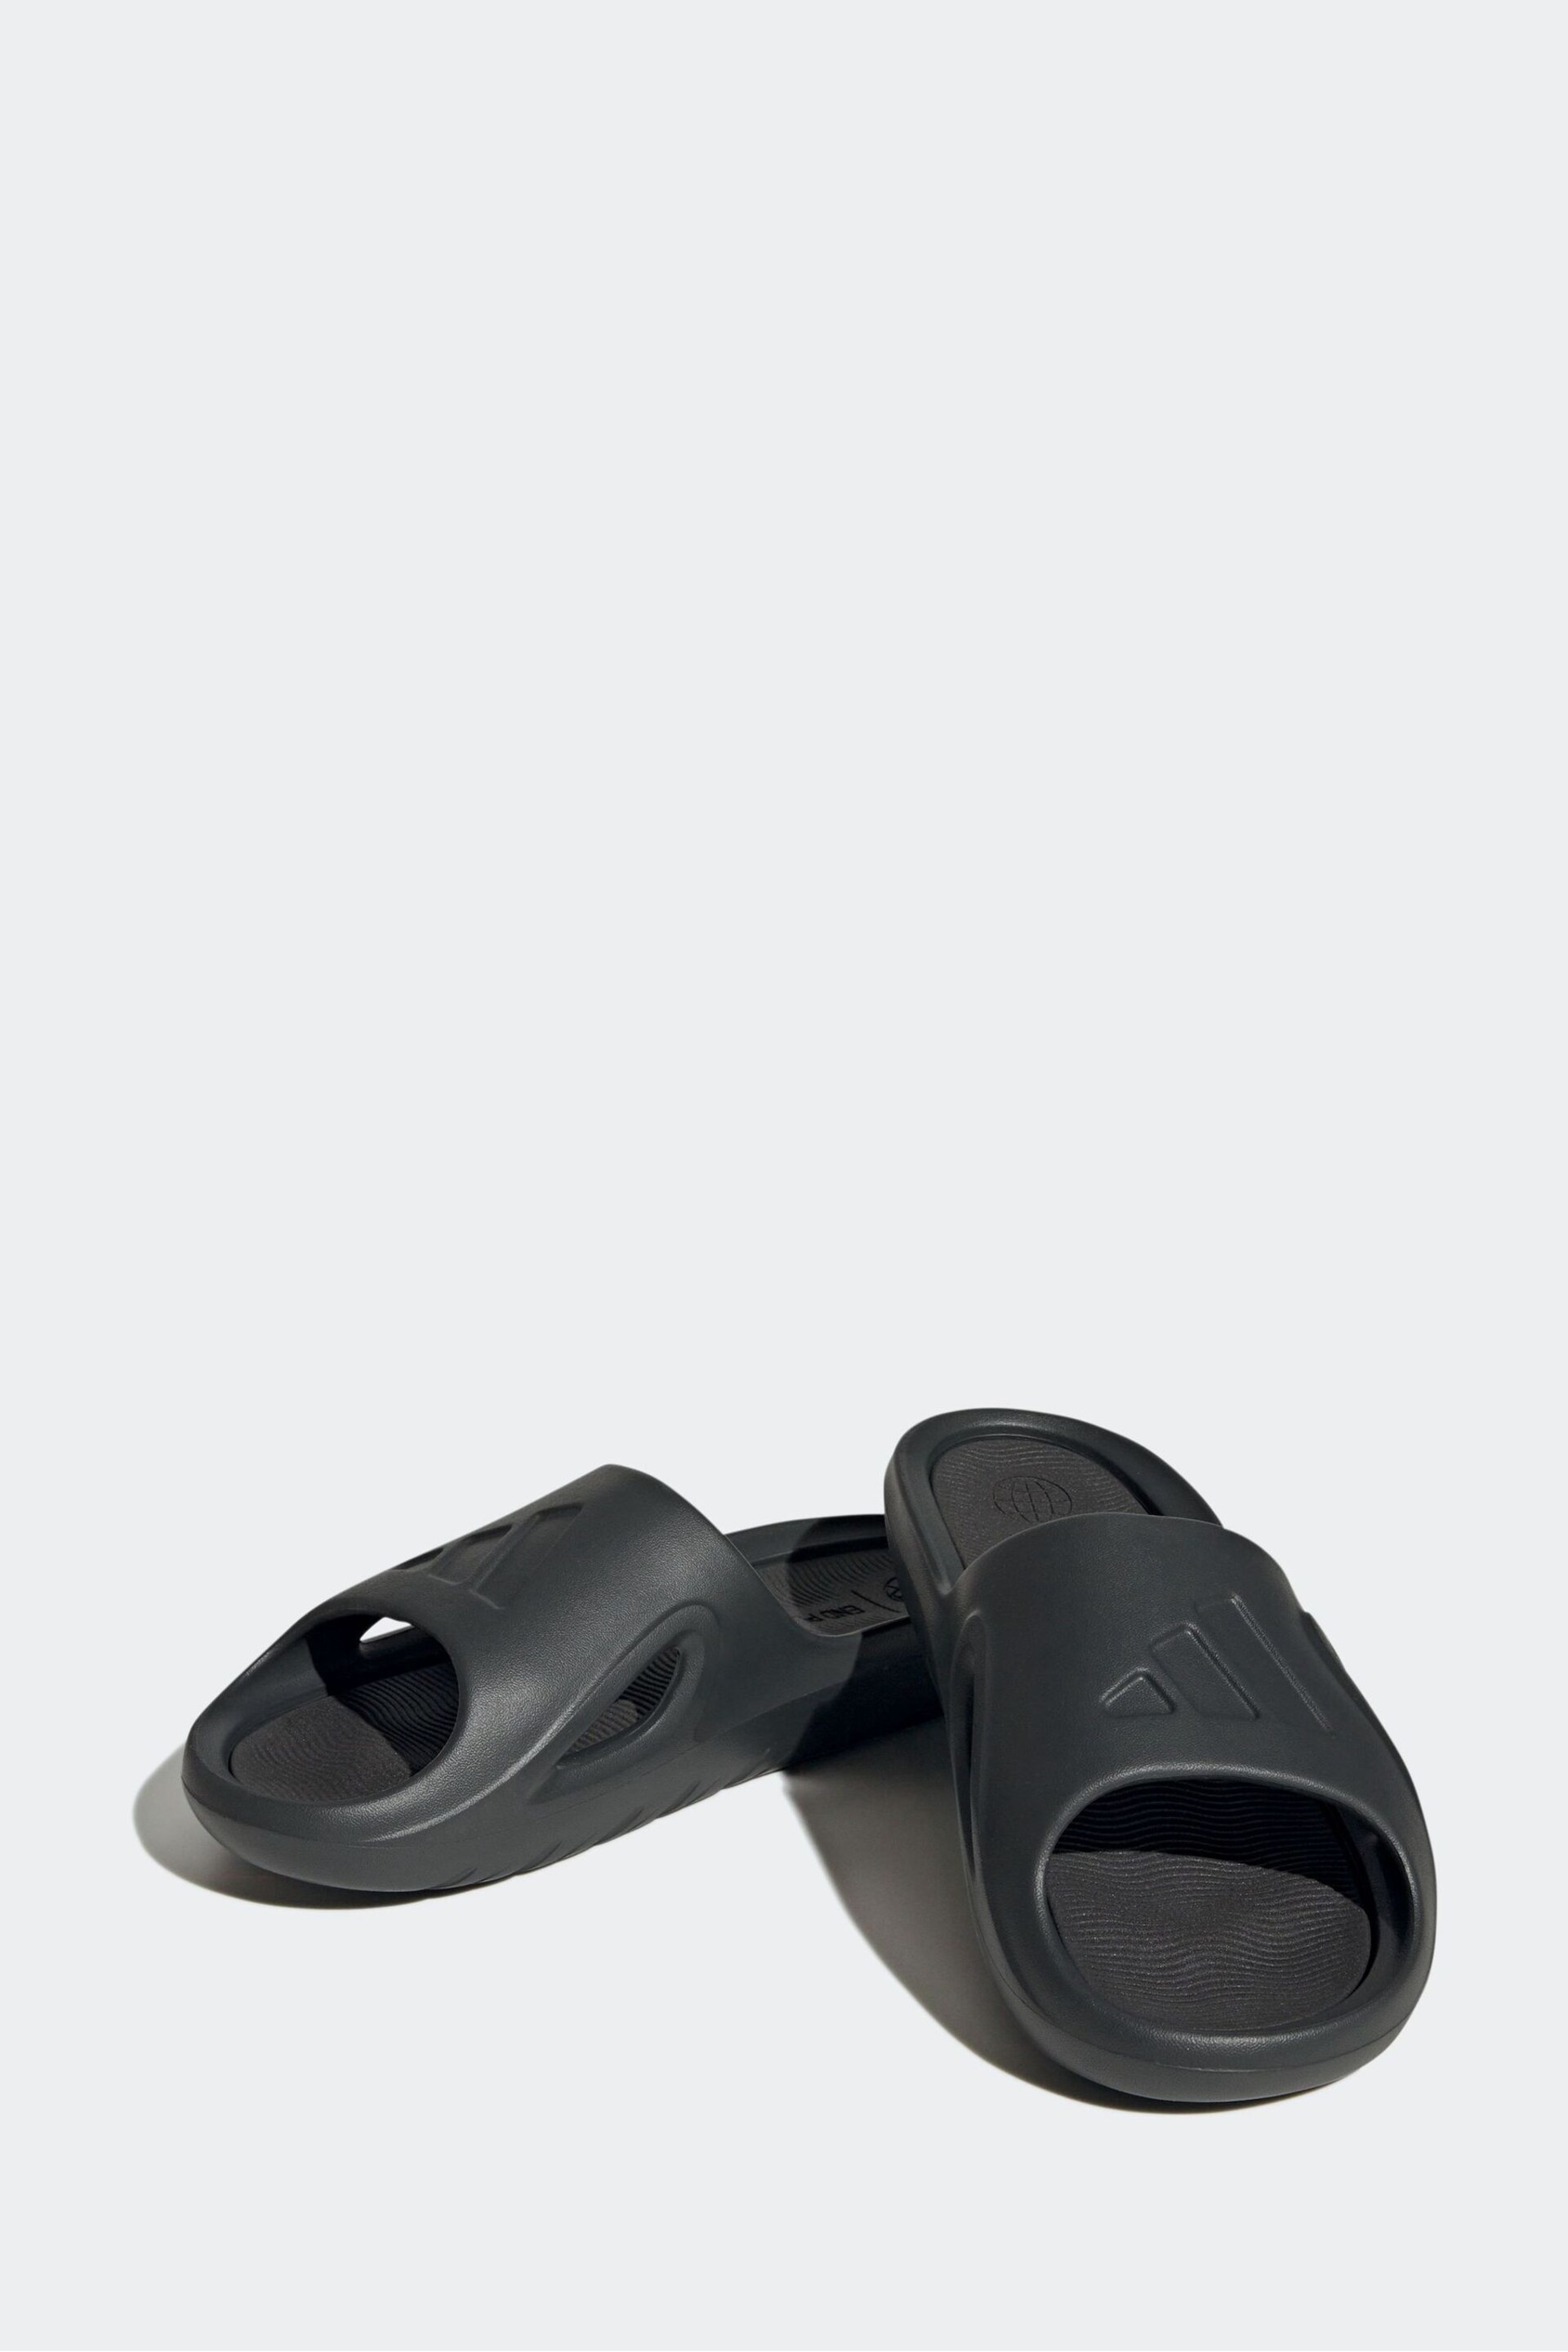 adidas Light Grey Adicane Slides - Image 3 of 7